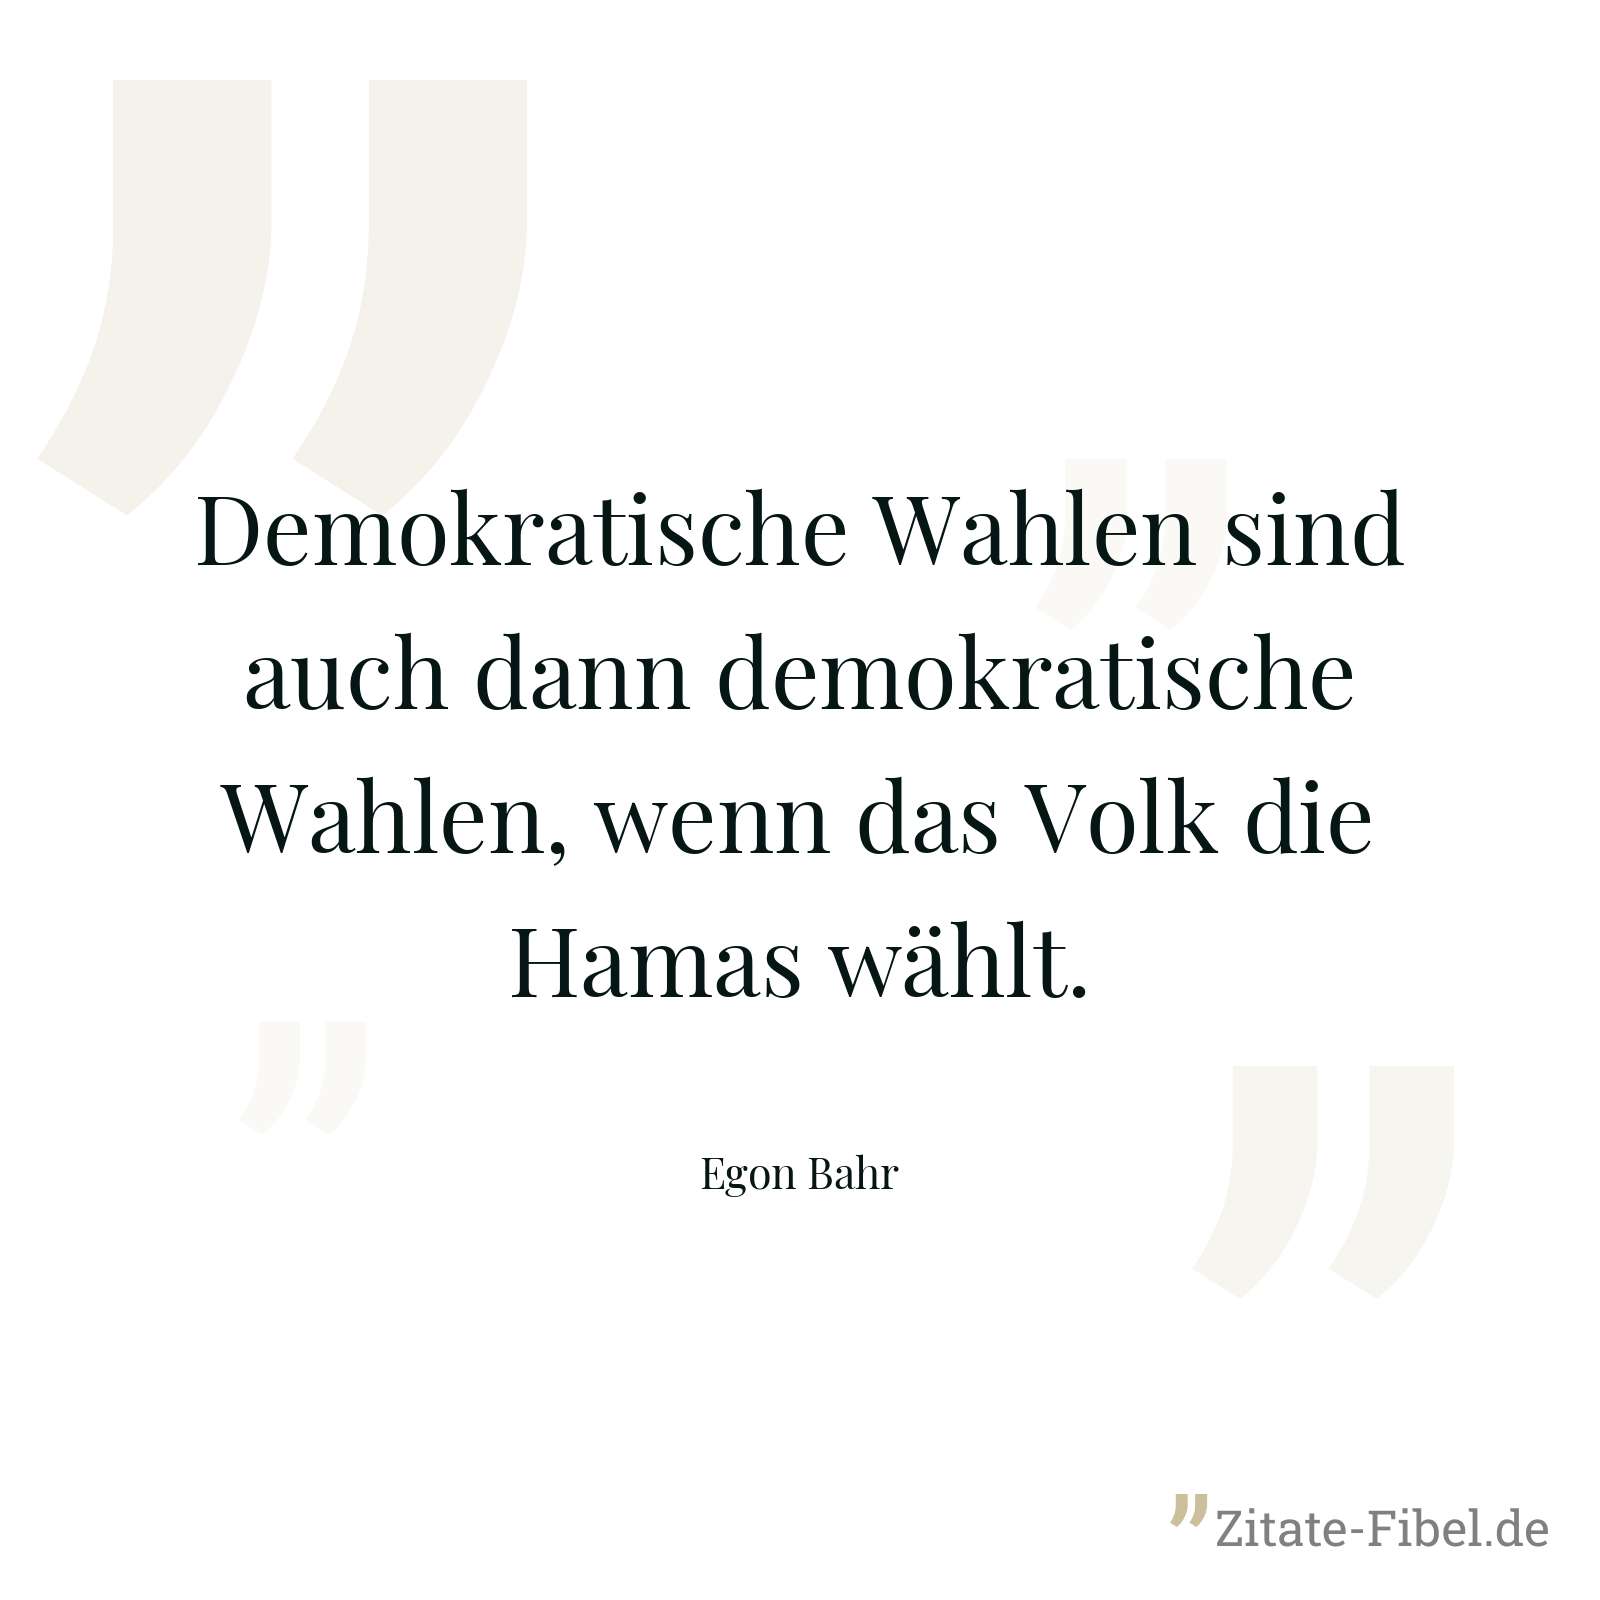 Demokratische Wahlen sind auch dann demokratische Wahlen, wenn das Volk die Hamas wählt. - Egon Bahr